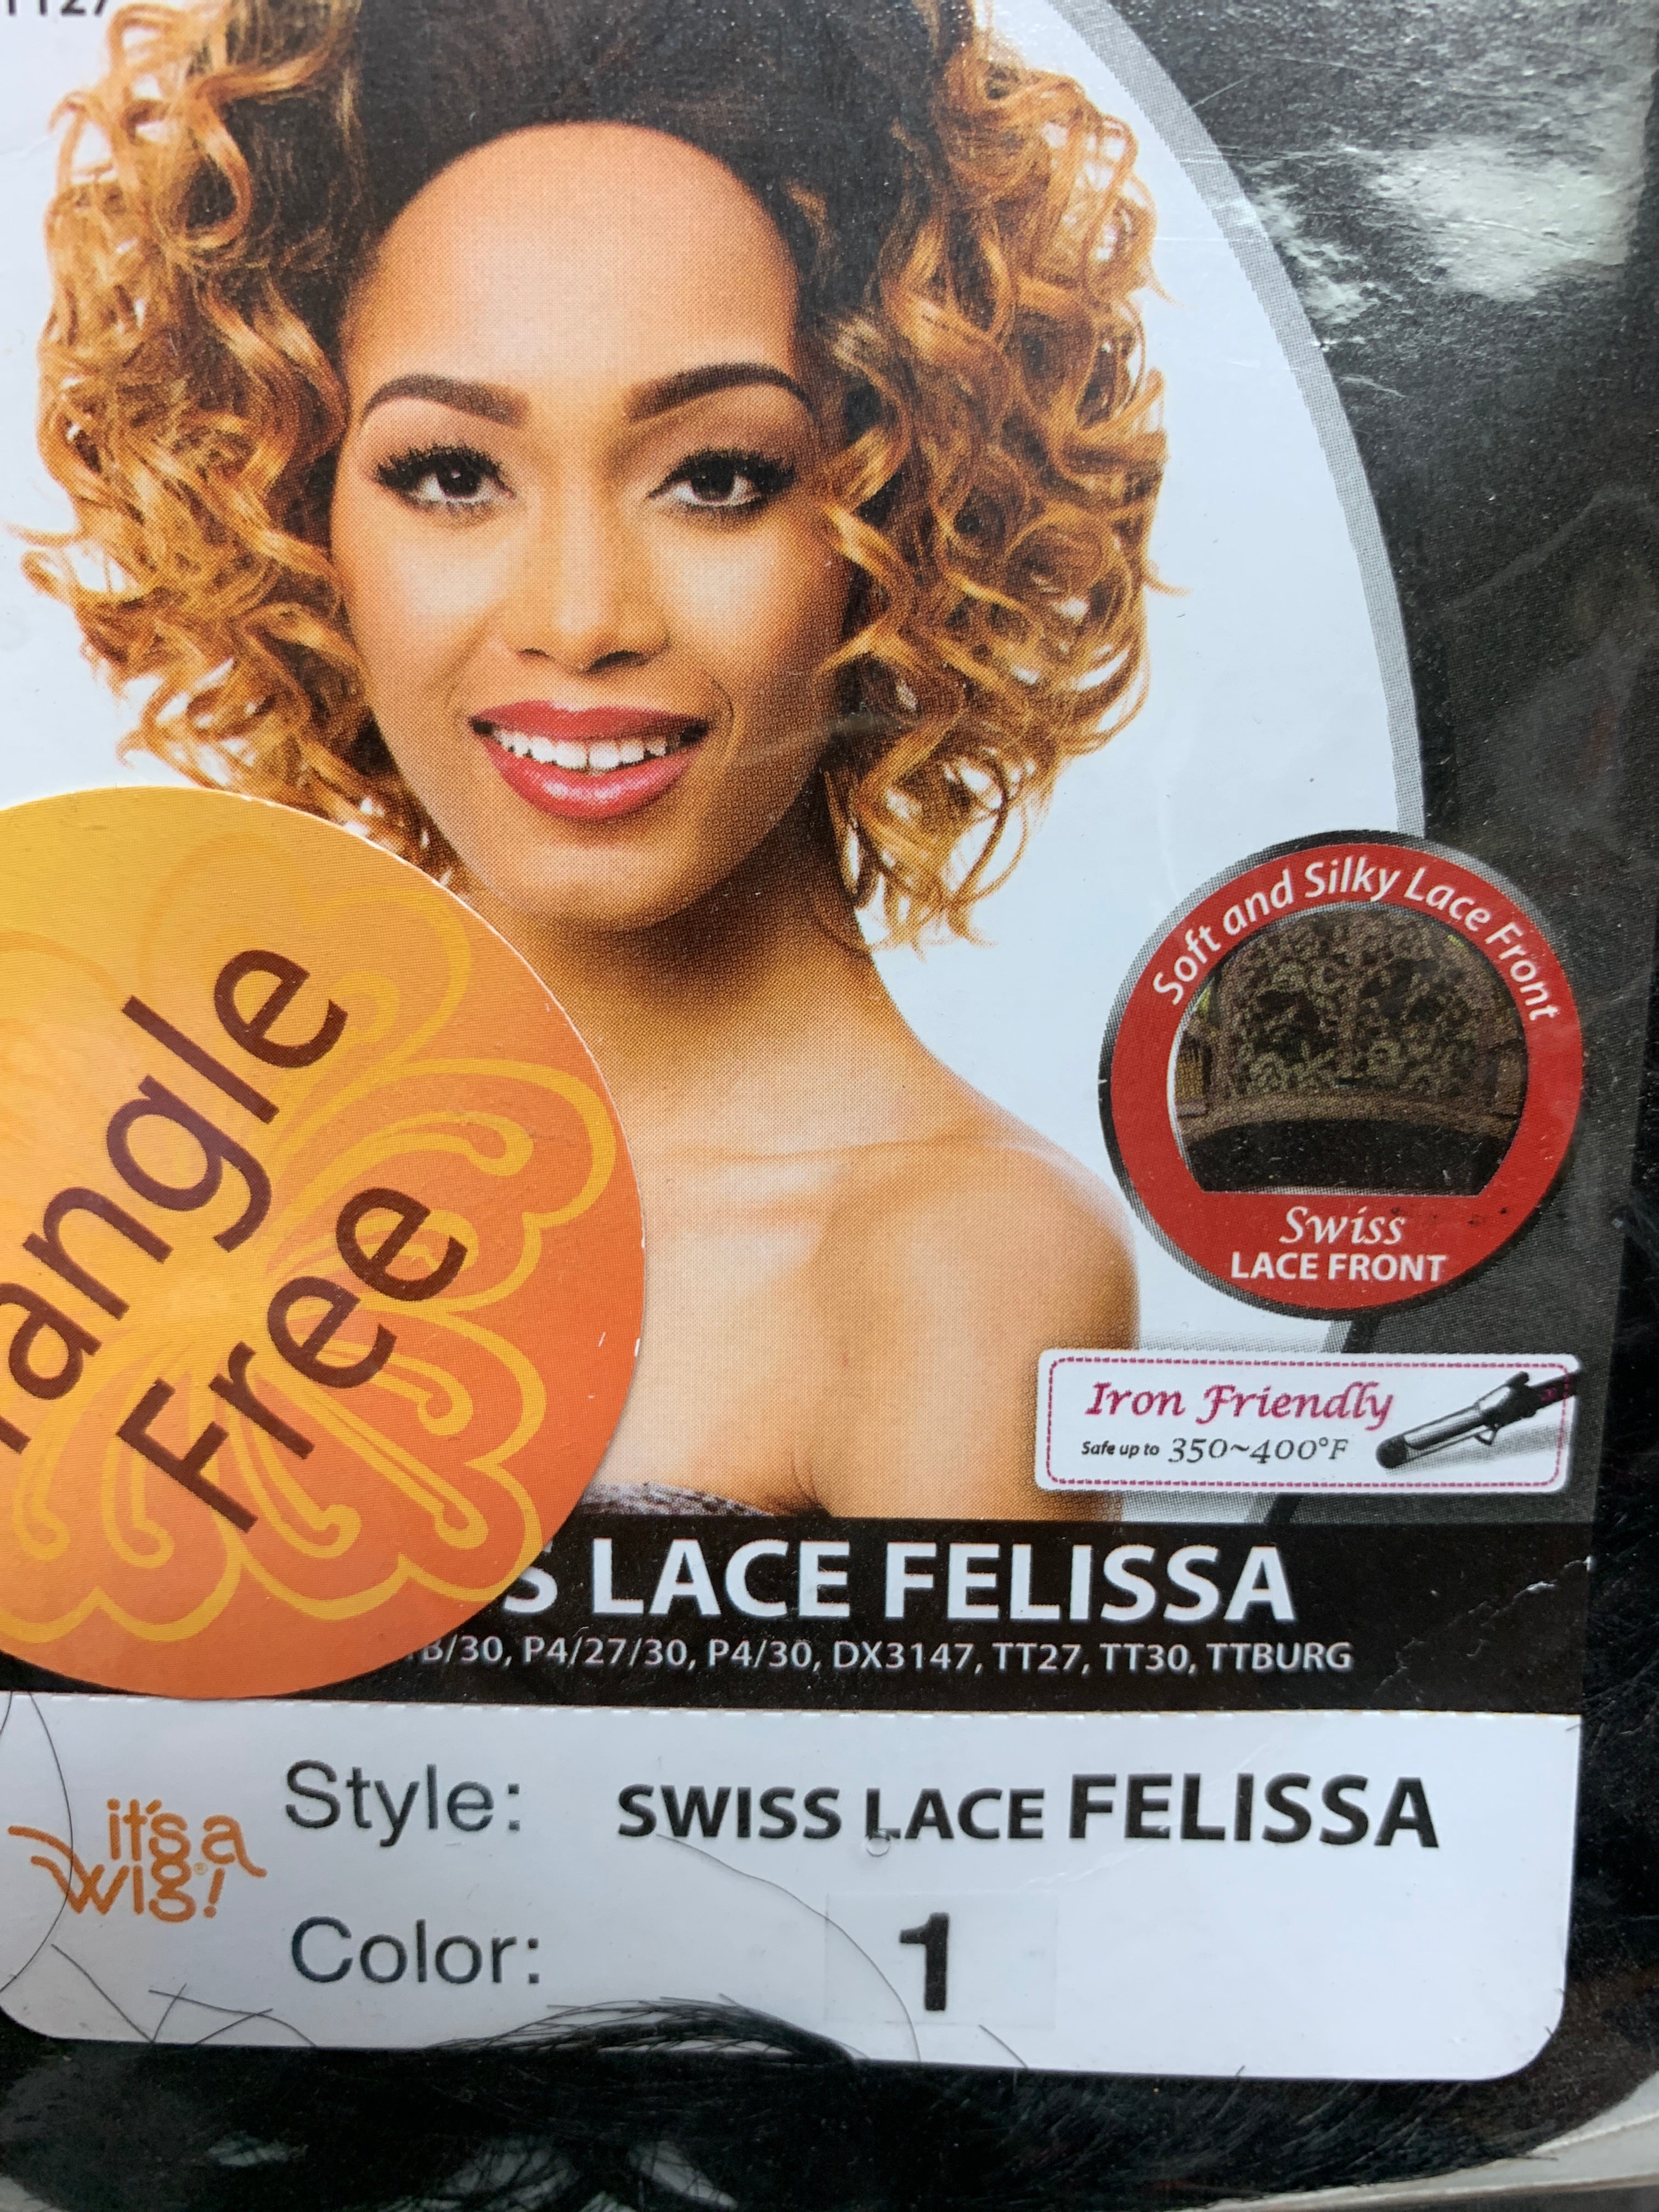 It’s a wig swiss lace felissa